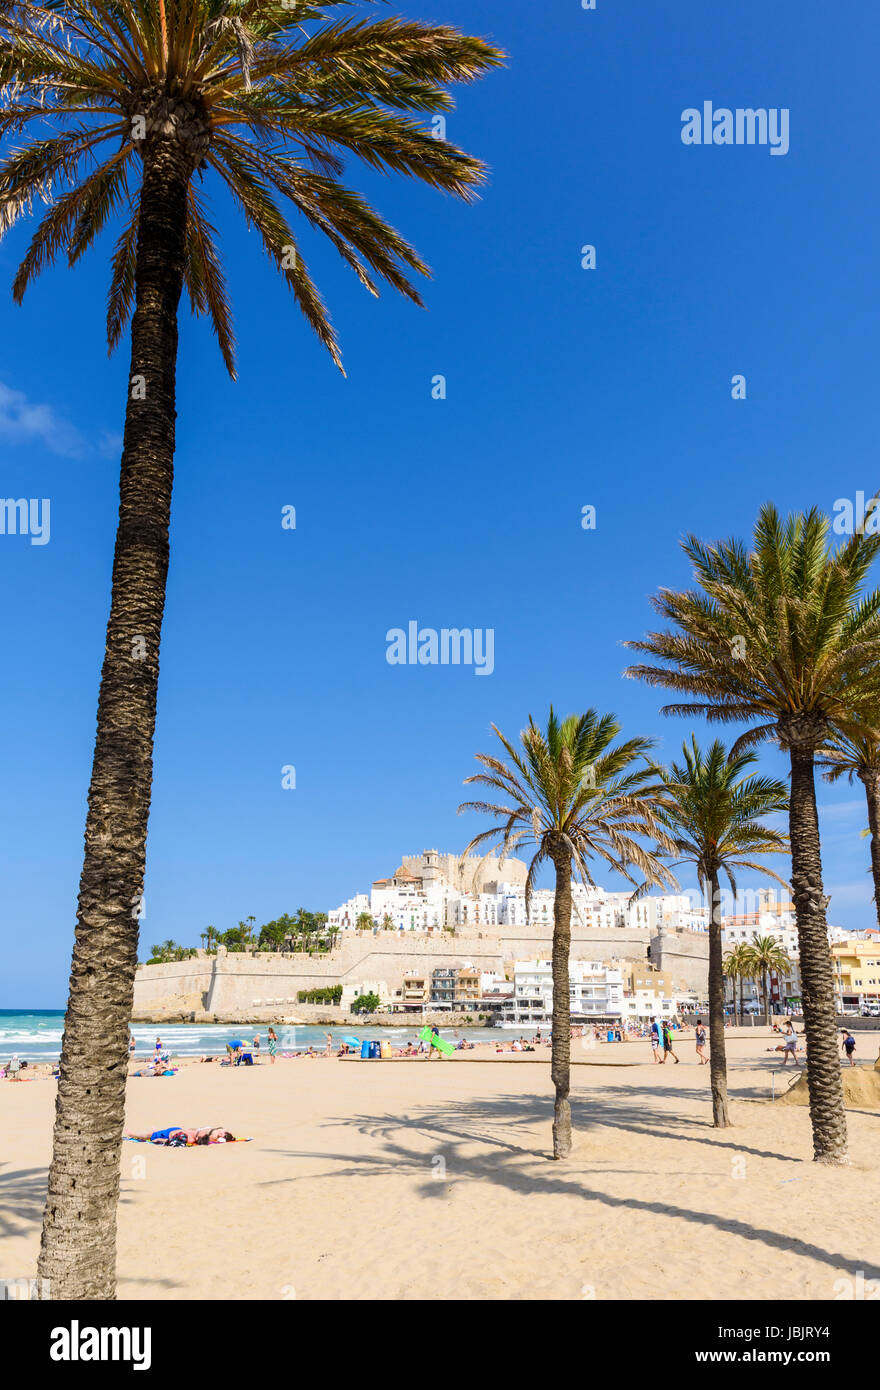 Palmiers sur la plage Playa Norte surplombé par le Château de Papa Luna et de la vieille ville, Madrid, Espagne Banque D'Images